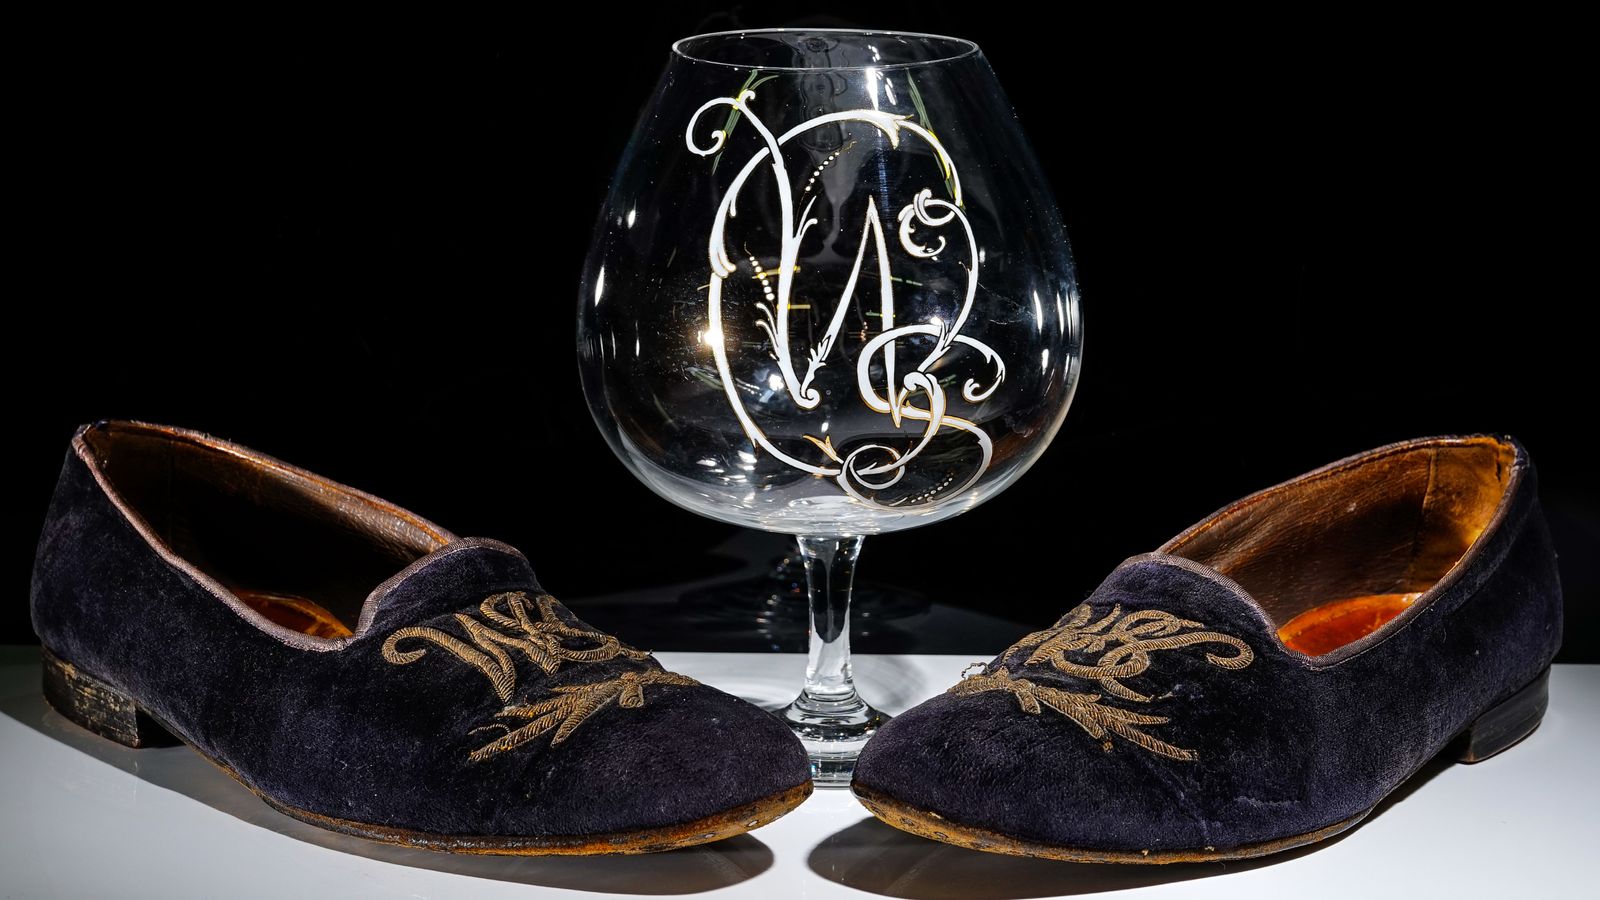 桌上的一副眼镜：天鹅绒拖鞋和白兰地玻璃各带有丘吉尔的名字首字母